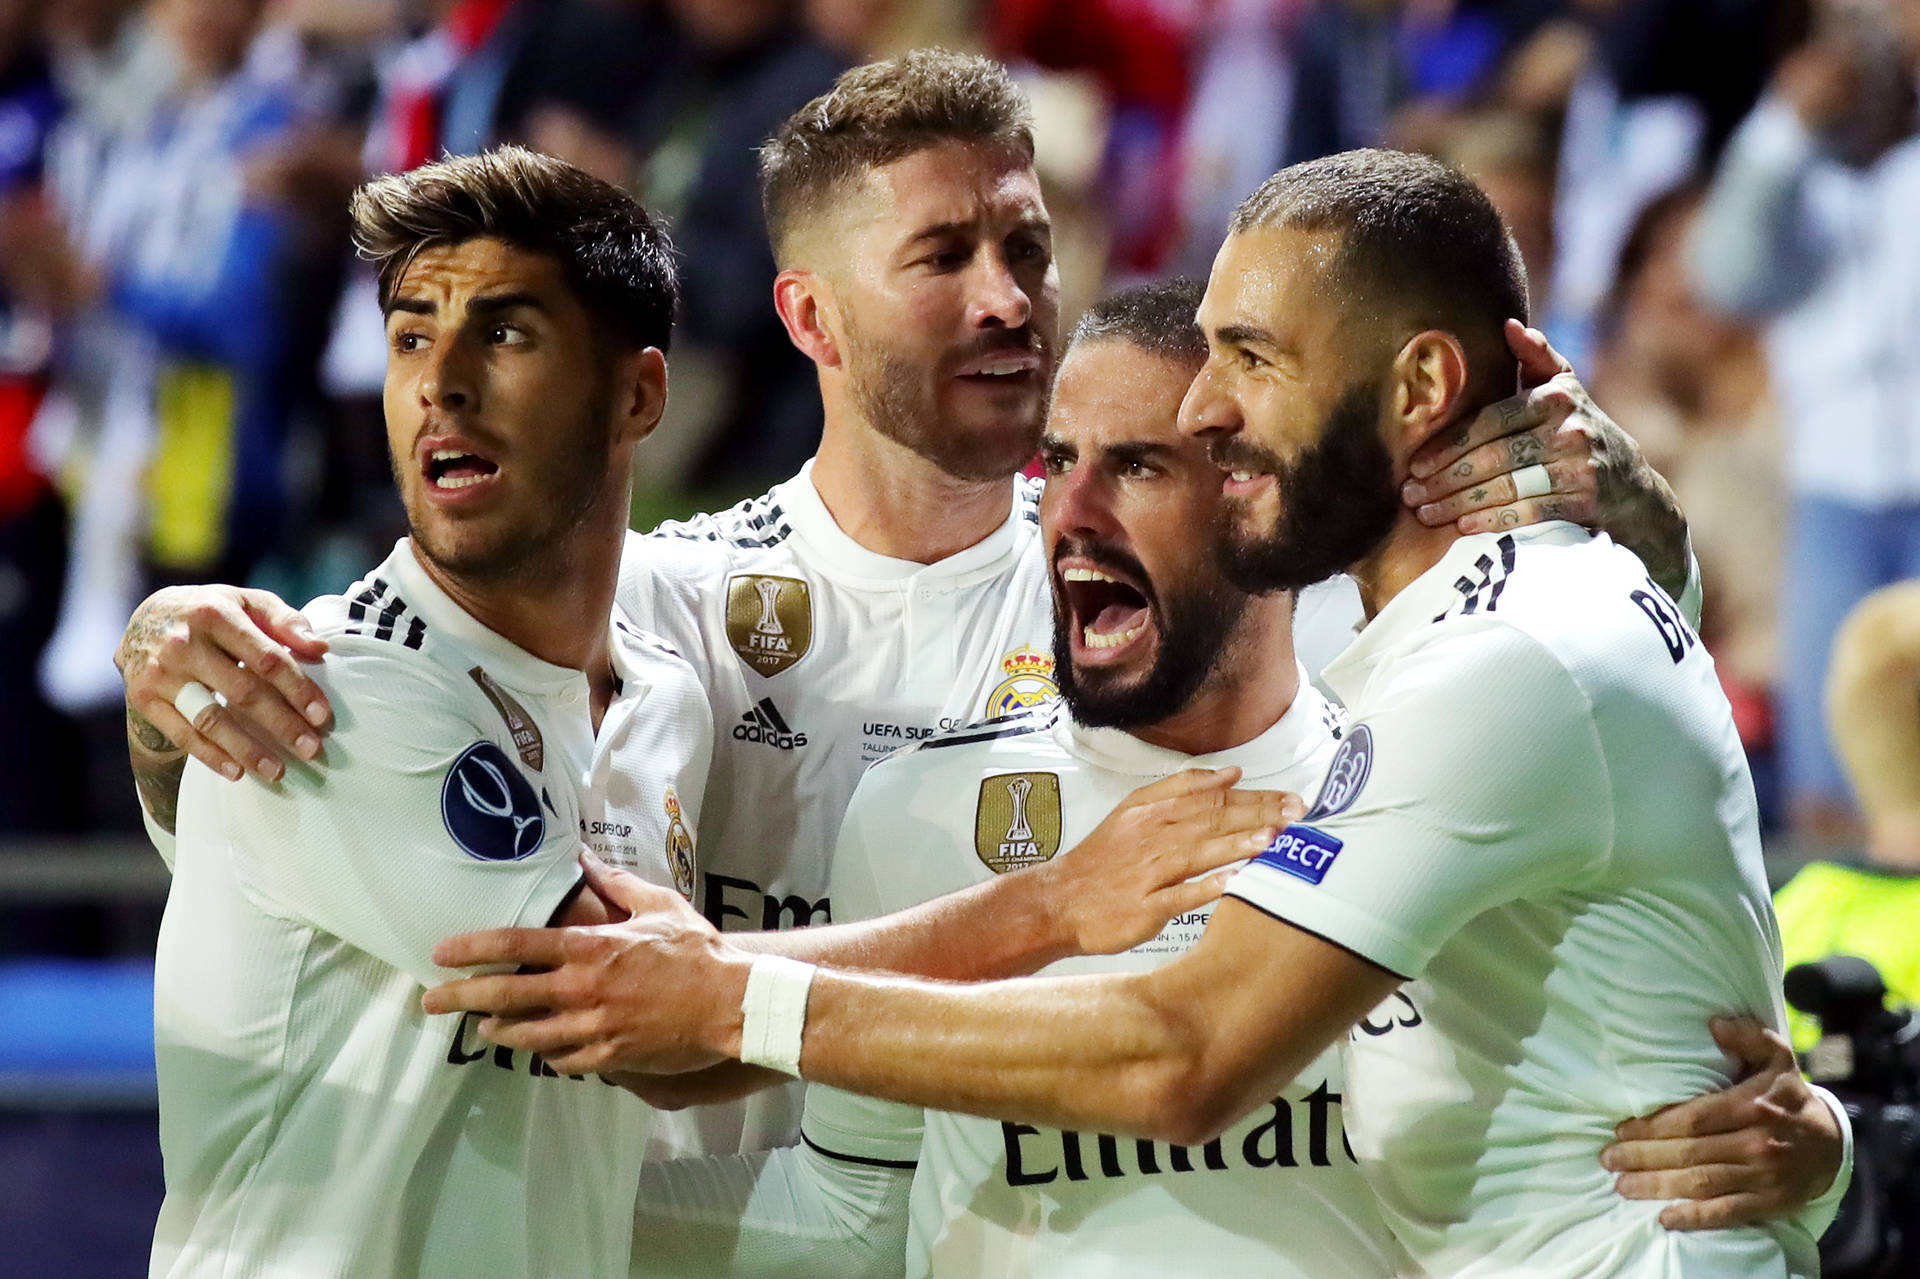 Abraçandoo Real Madrid Em 4k. Papel de Parede